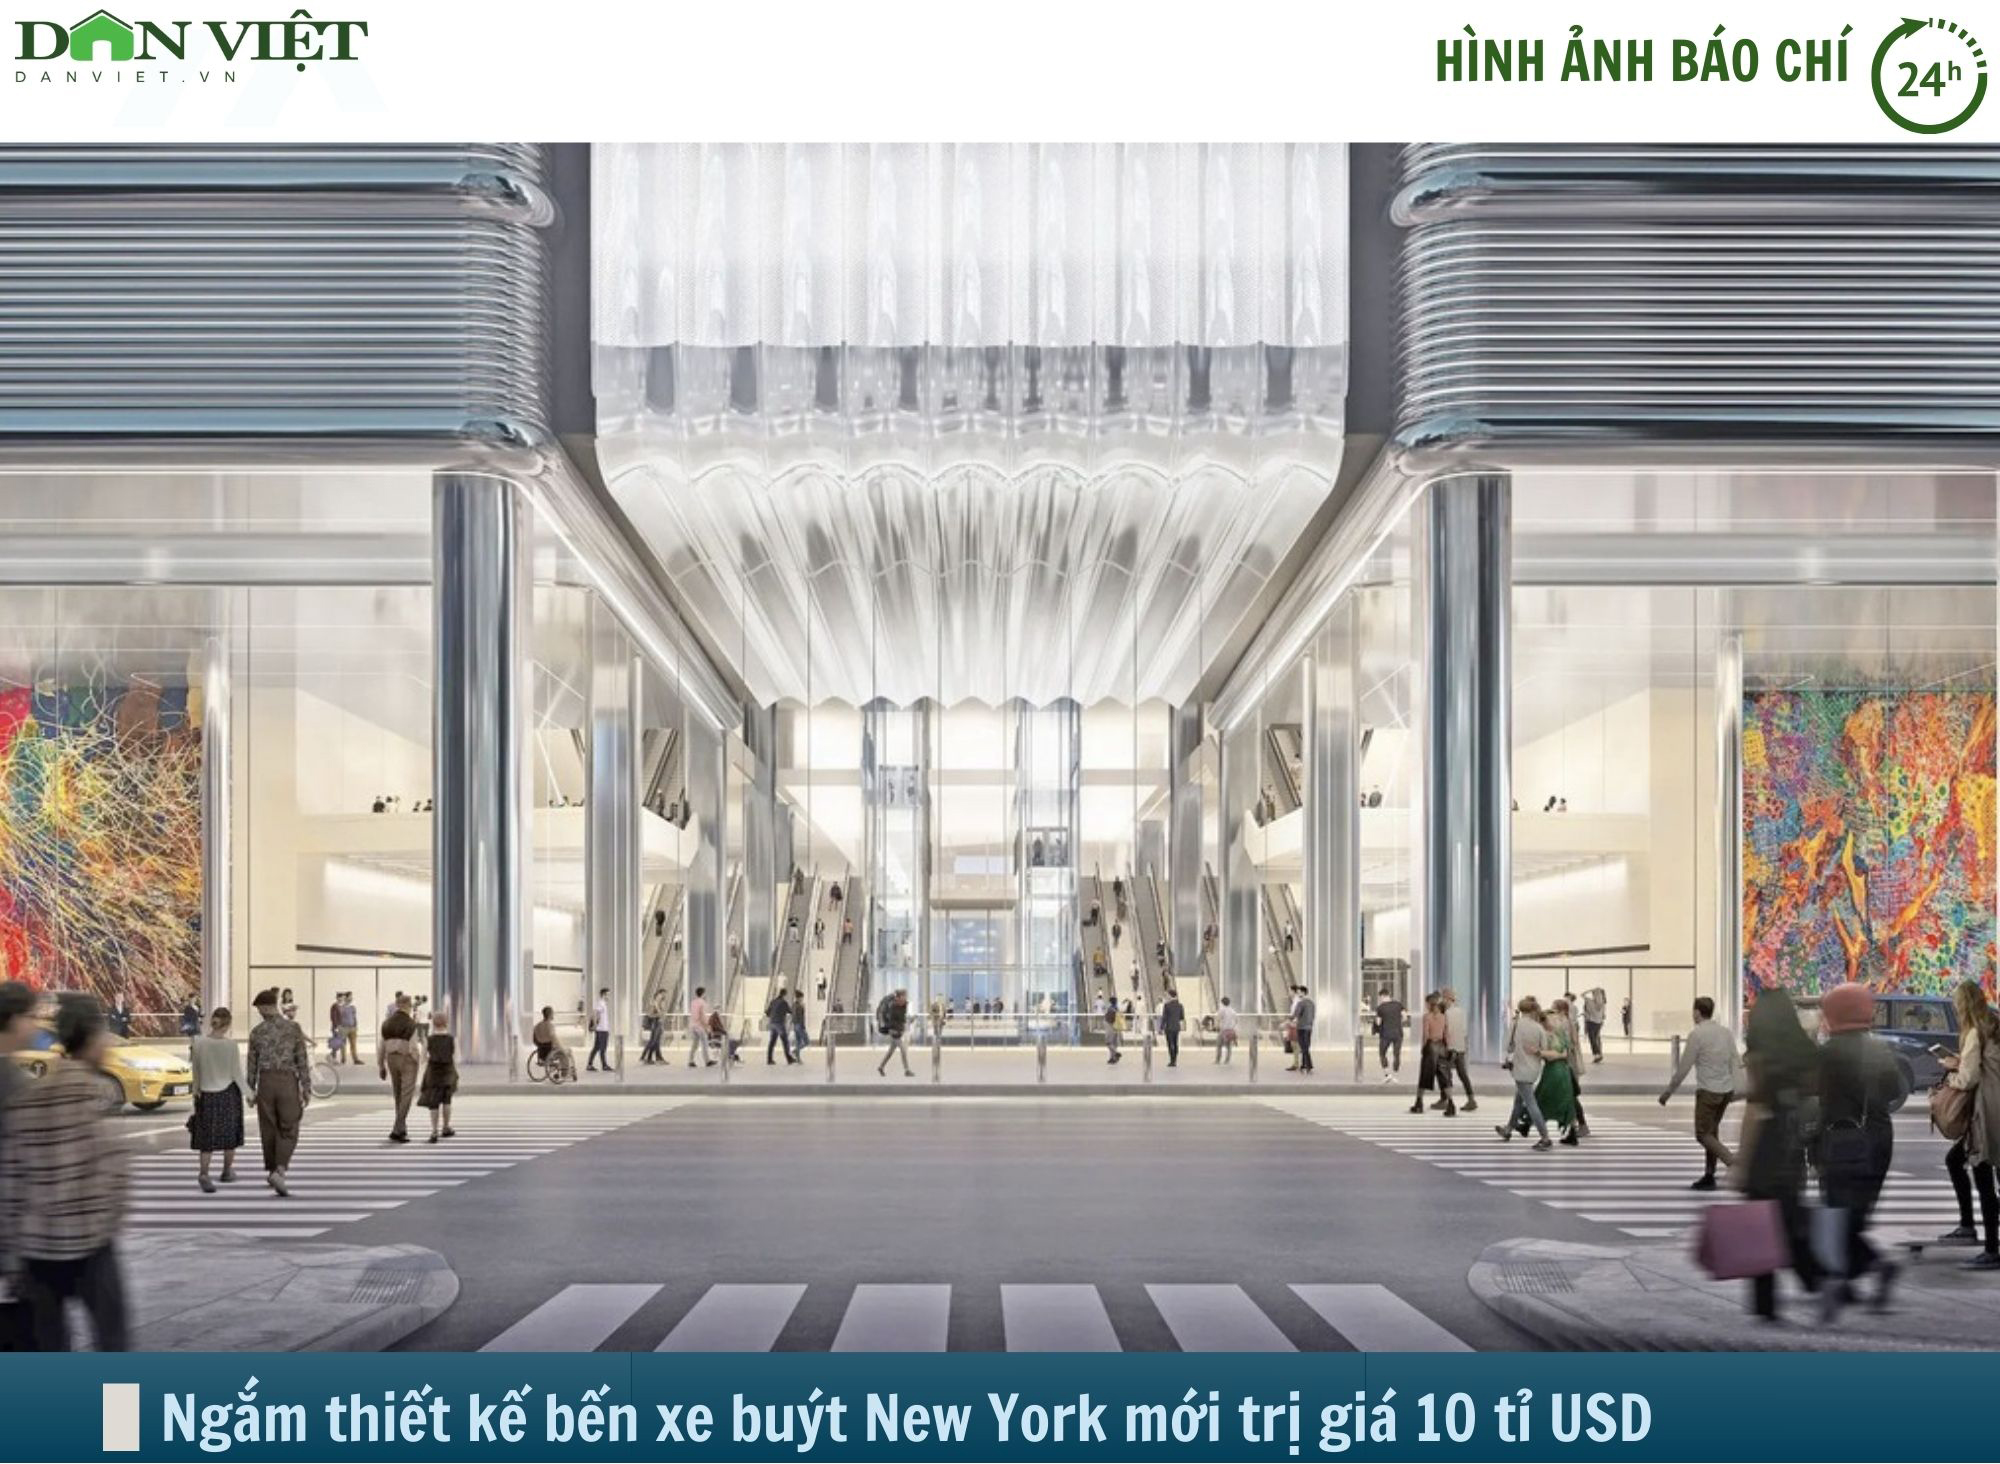 Hình ảnh báo chí 24h: New York sắp có bến buýt mới trị giá 10 tỷ USD- Ảnh 1.